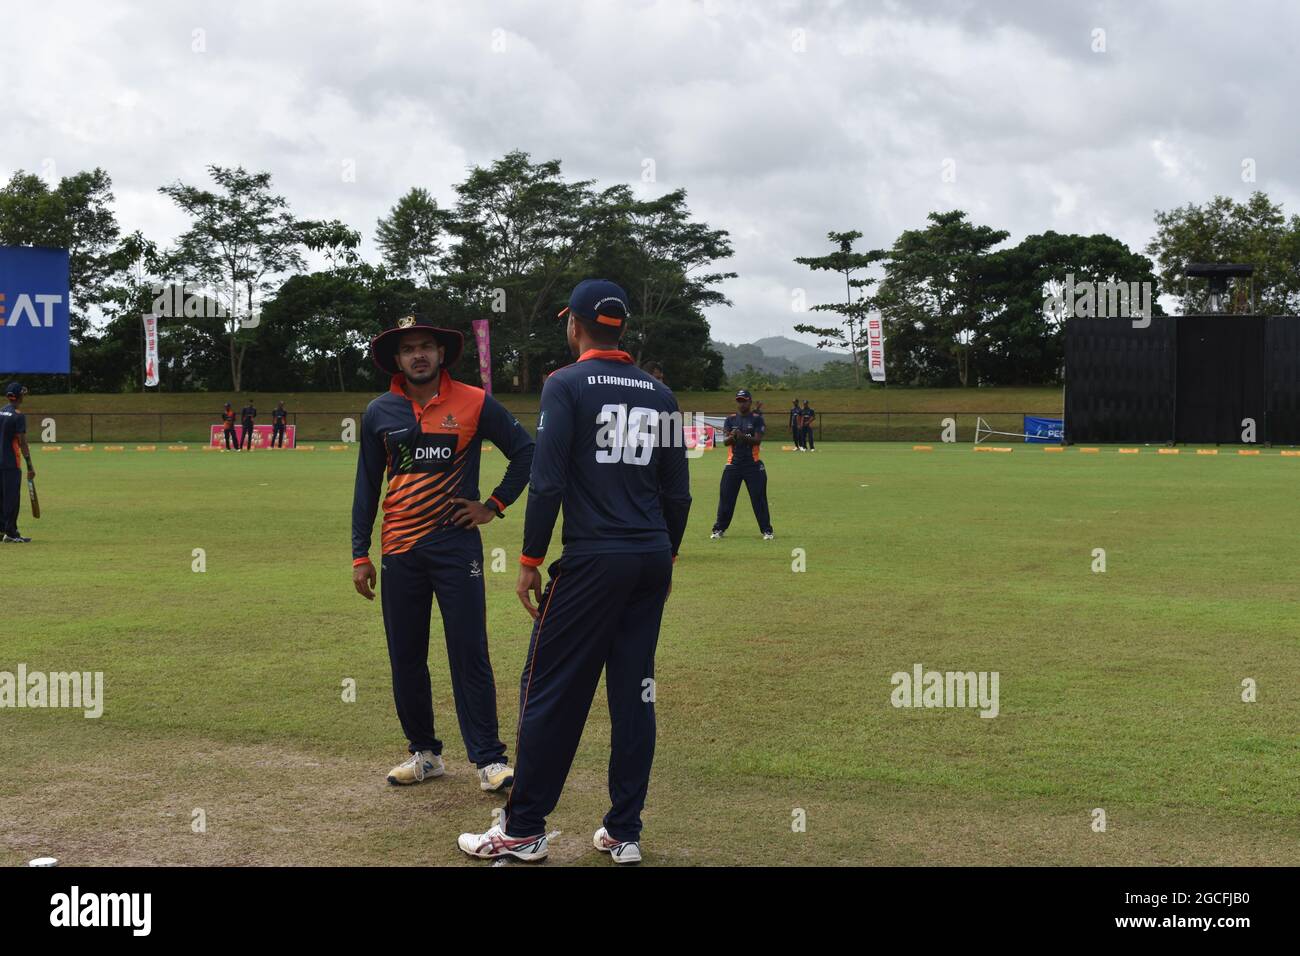 Los criketers de Sri Lanka Dinesh Chandimal y Angelo Perera tienen una charla. El pintoresco recinto de críquet de la Ordenanza del Ejército. Dombagoda. Sri Lanka. Foto de stock